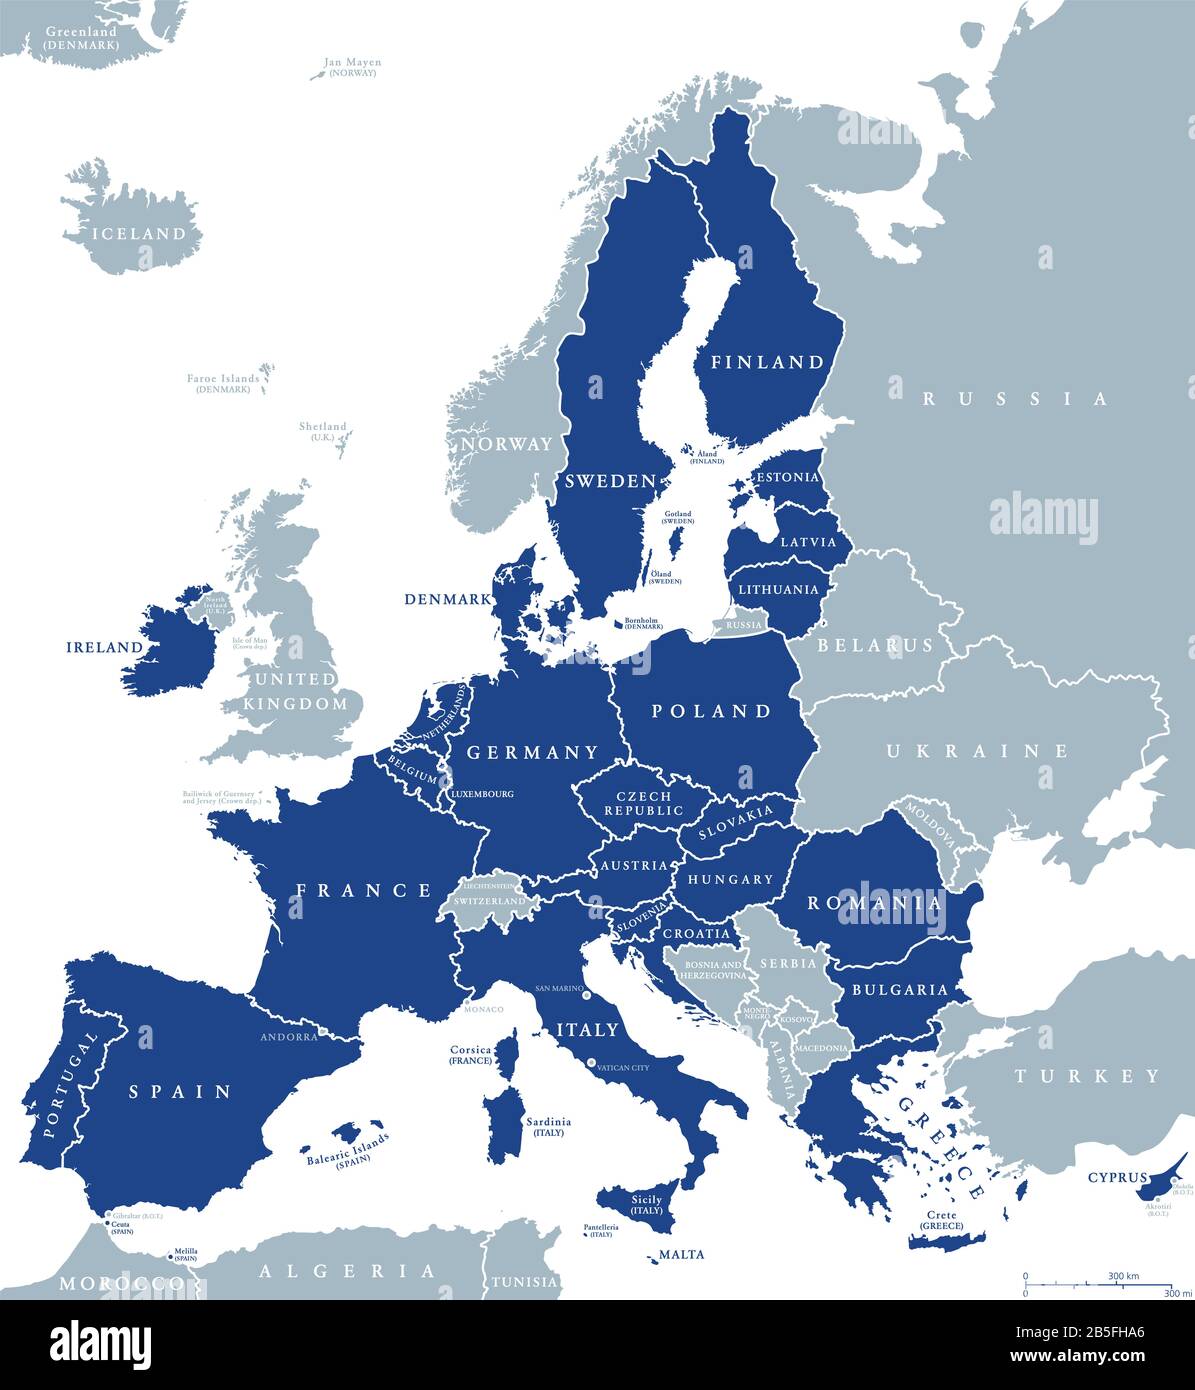 Karte der EU-Mitgliedsstaaten nach Brexit, englische Kennzeichnung. 27 EU-Mitgliedsstaaten, nachdem Großbritannien aufgehört hatte. Stockfoto